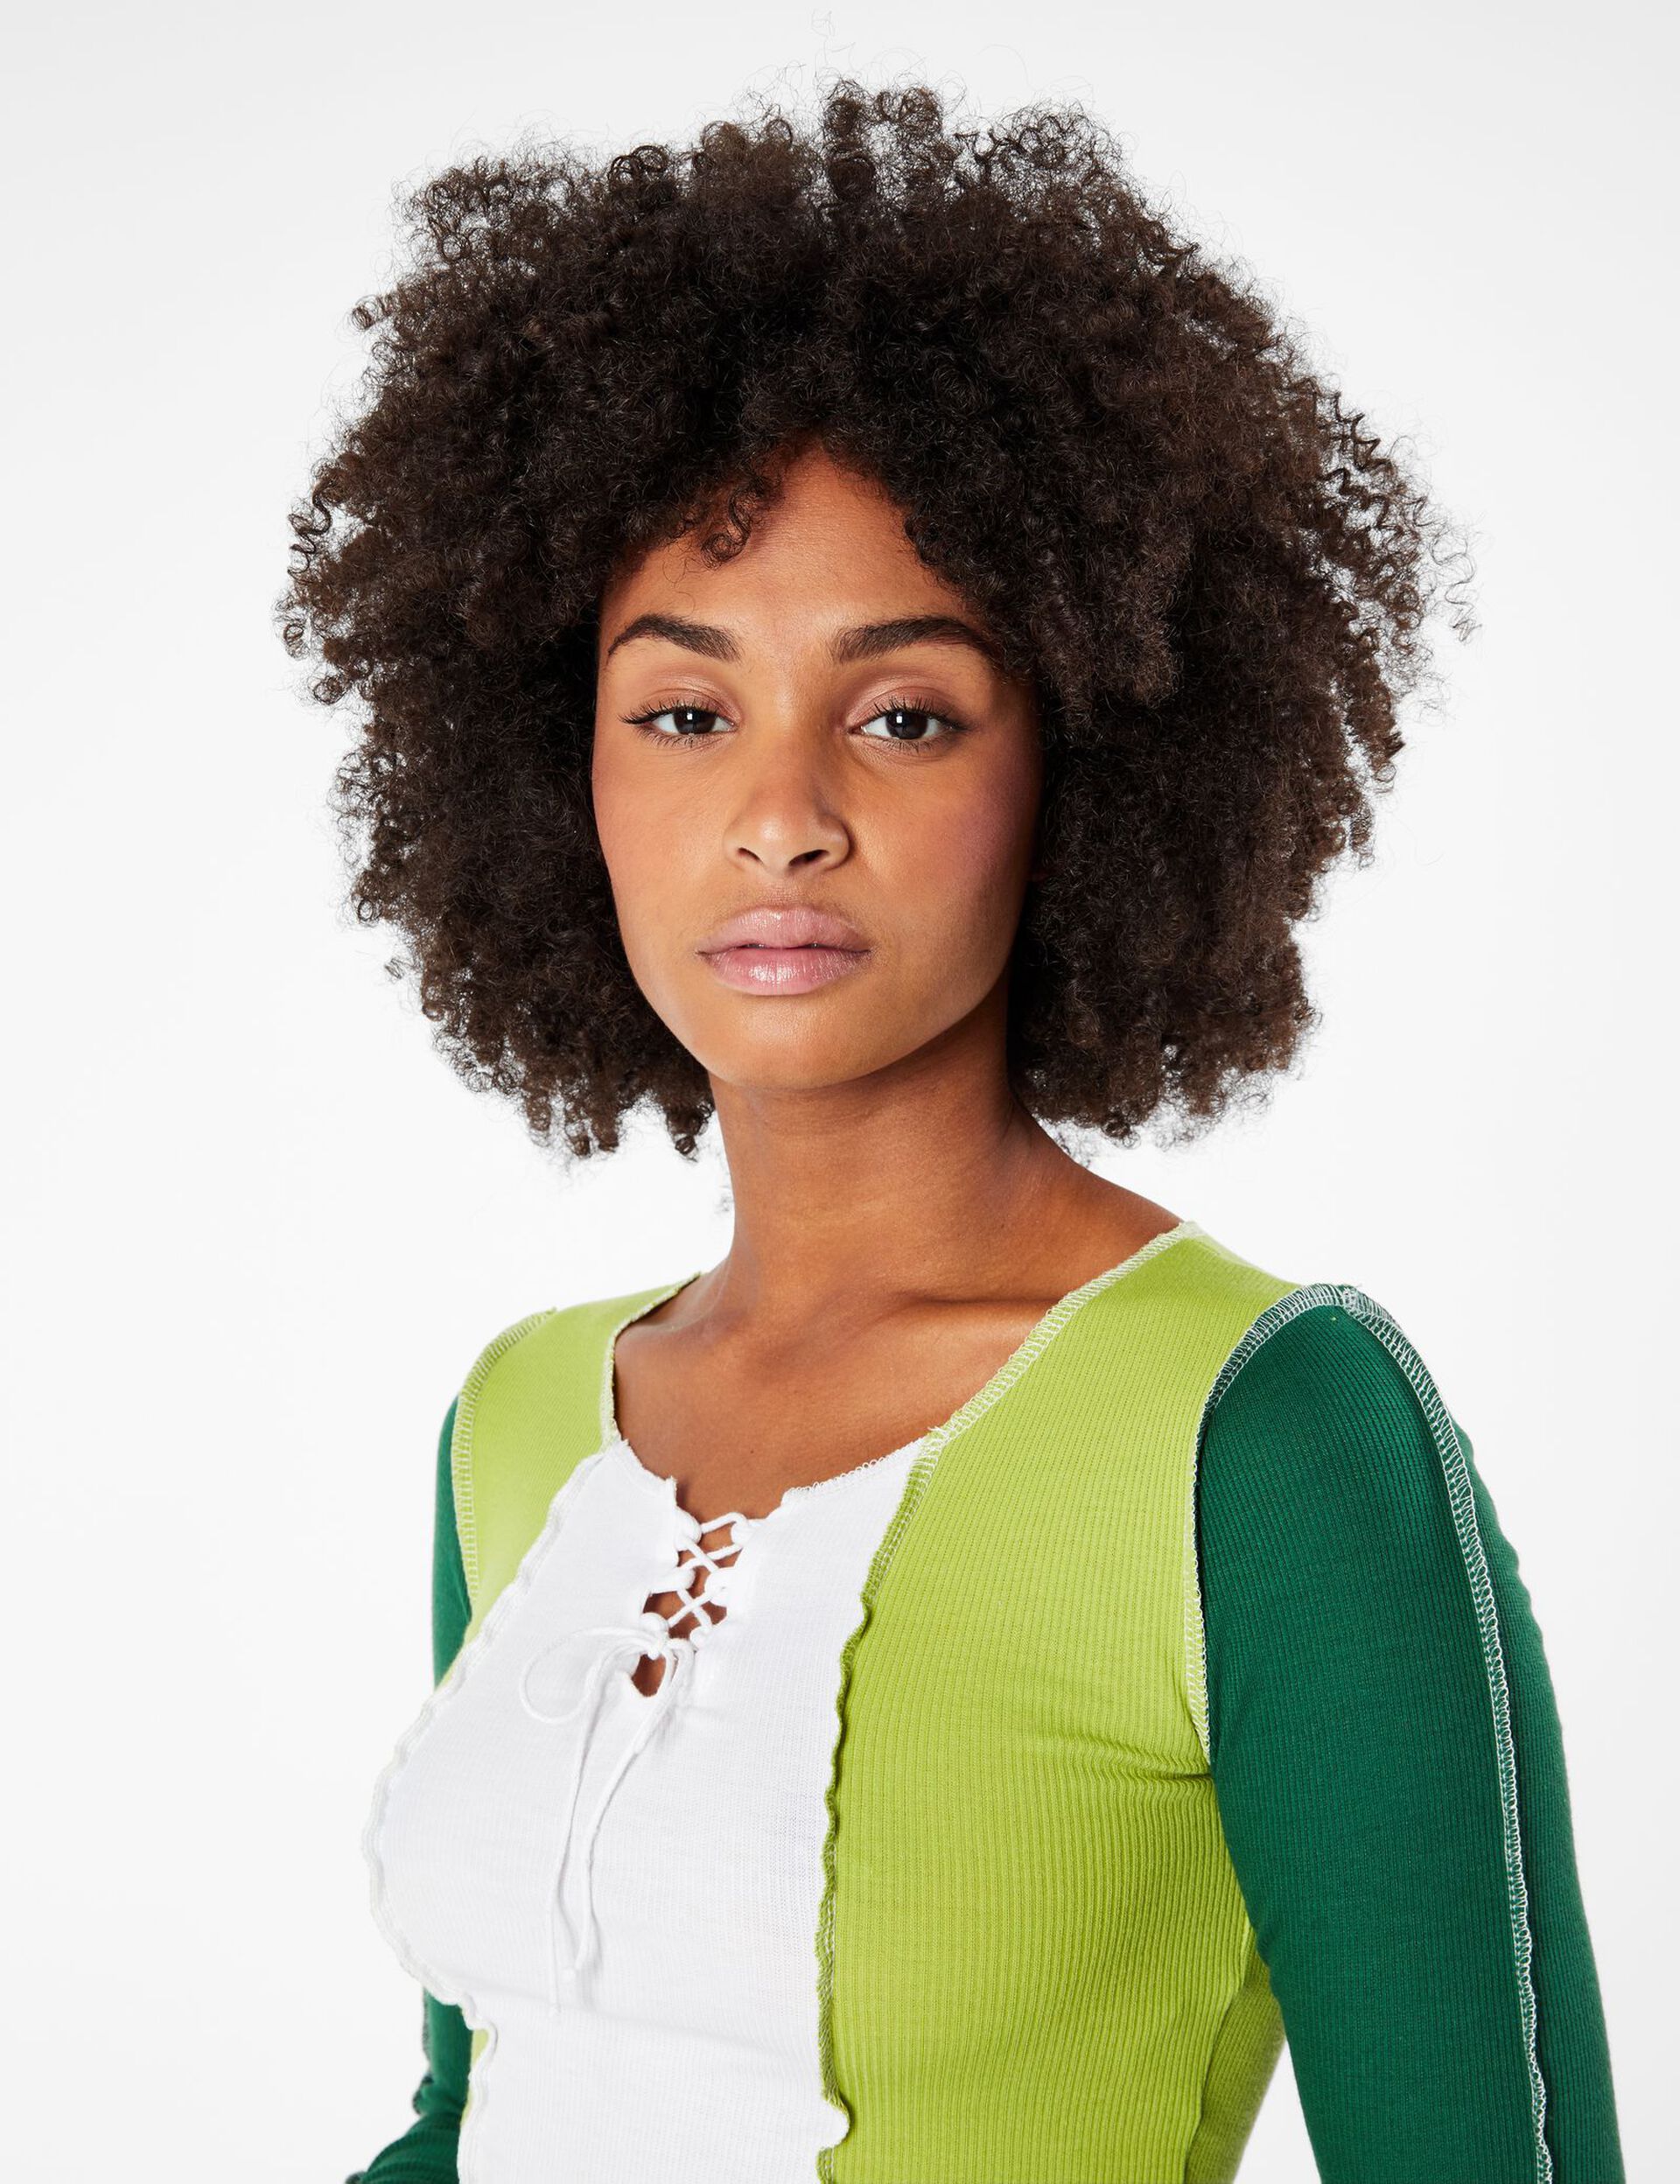 Tee-shirt tricolore vert foncé, vert clair et blanc